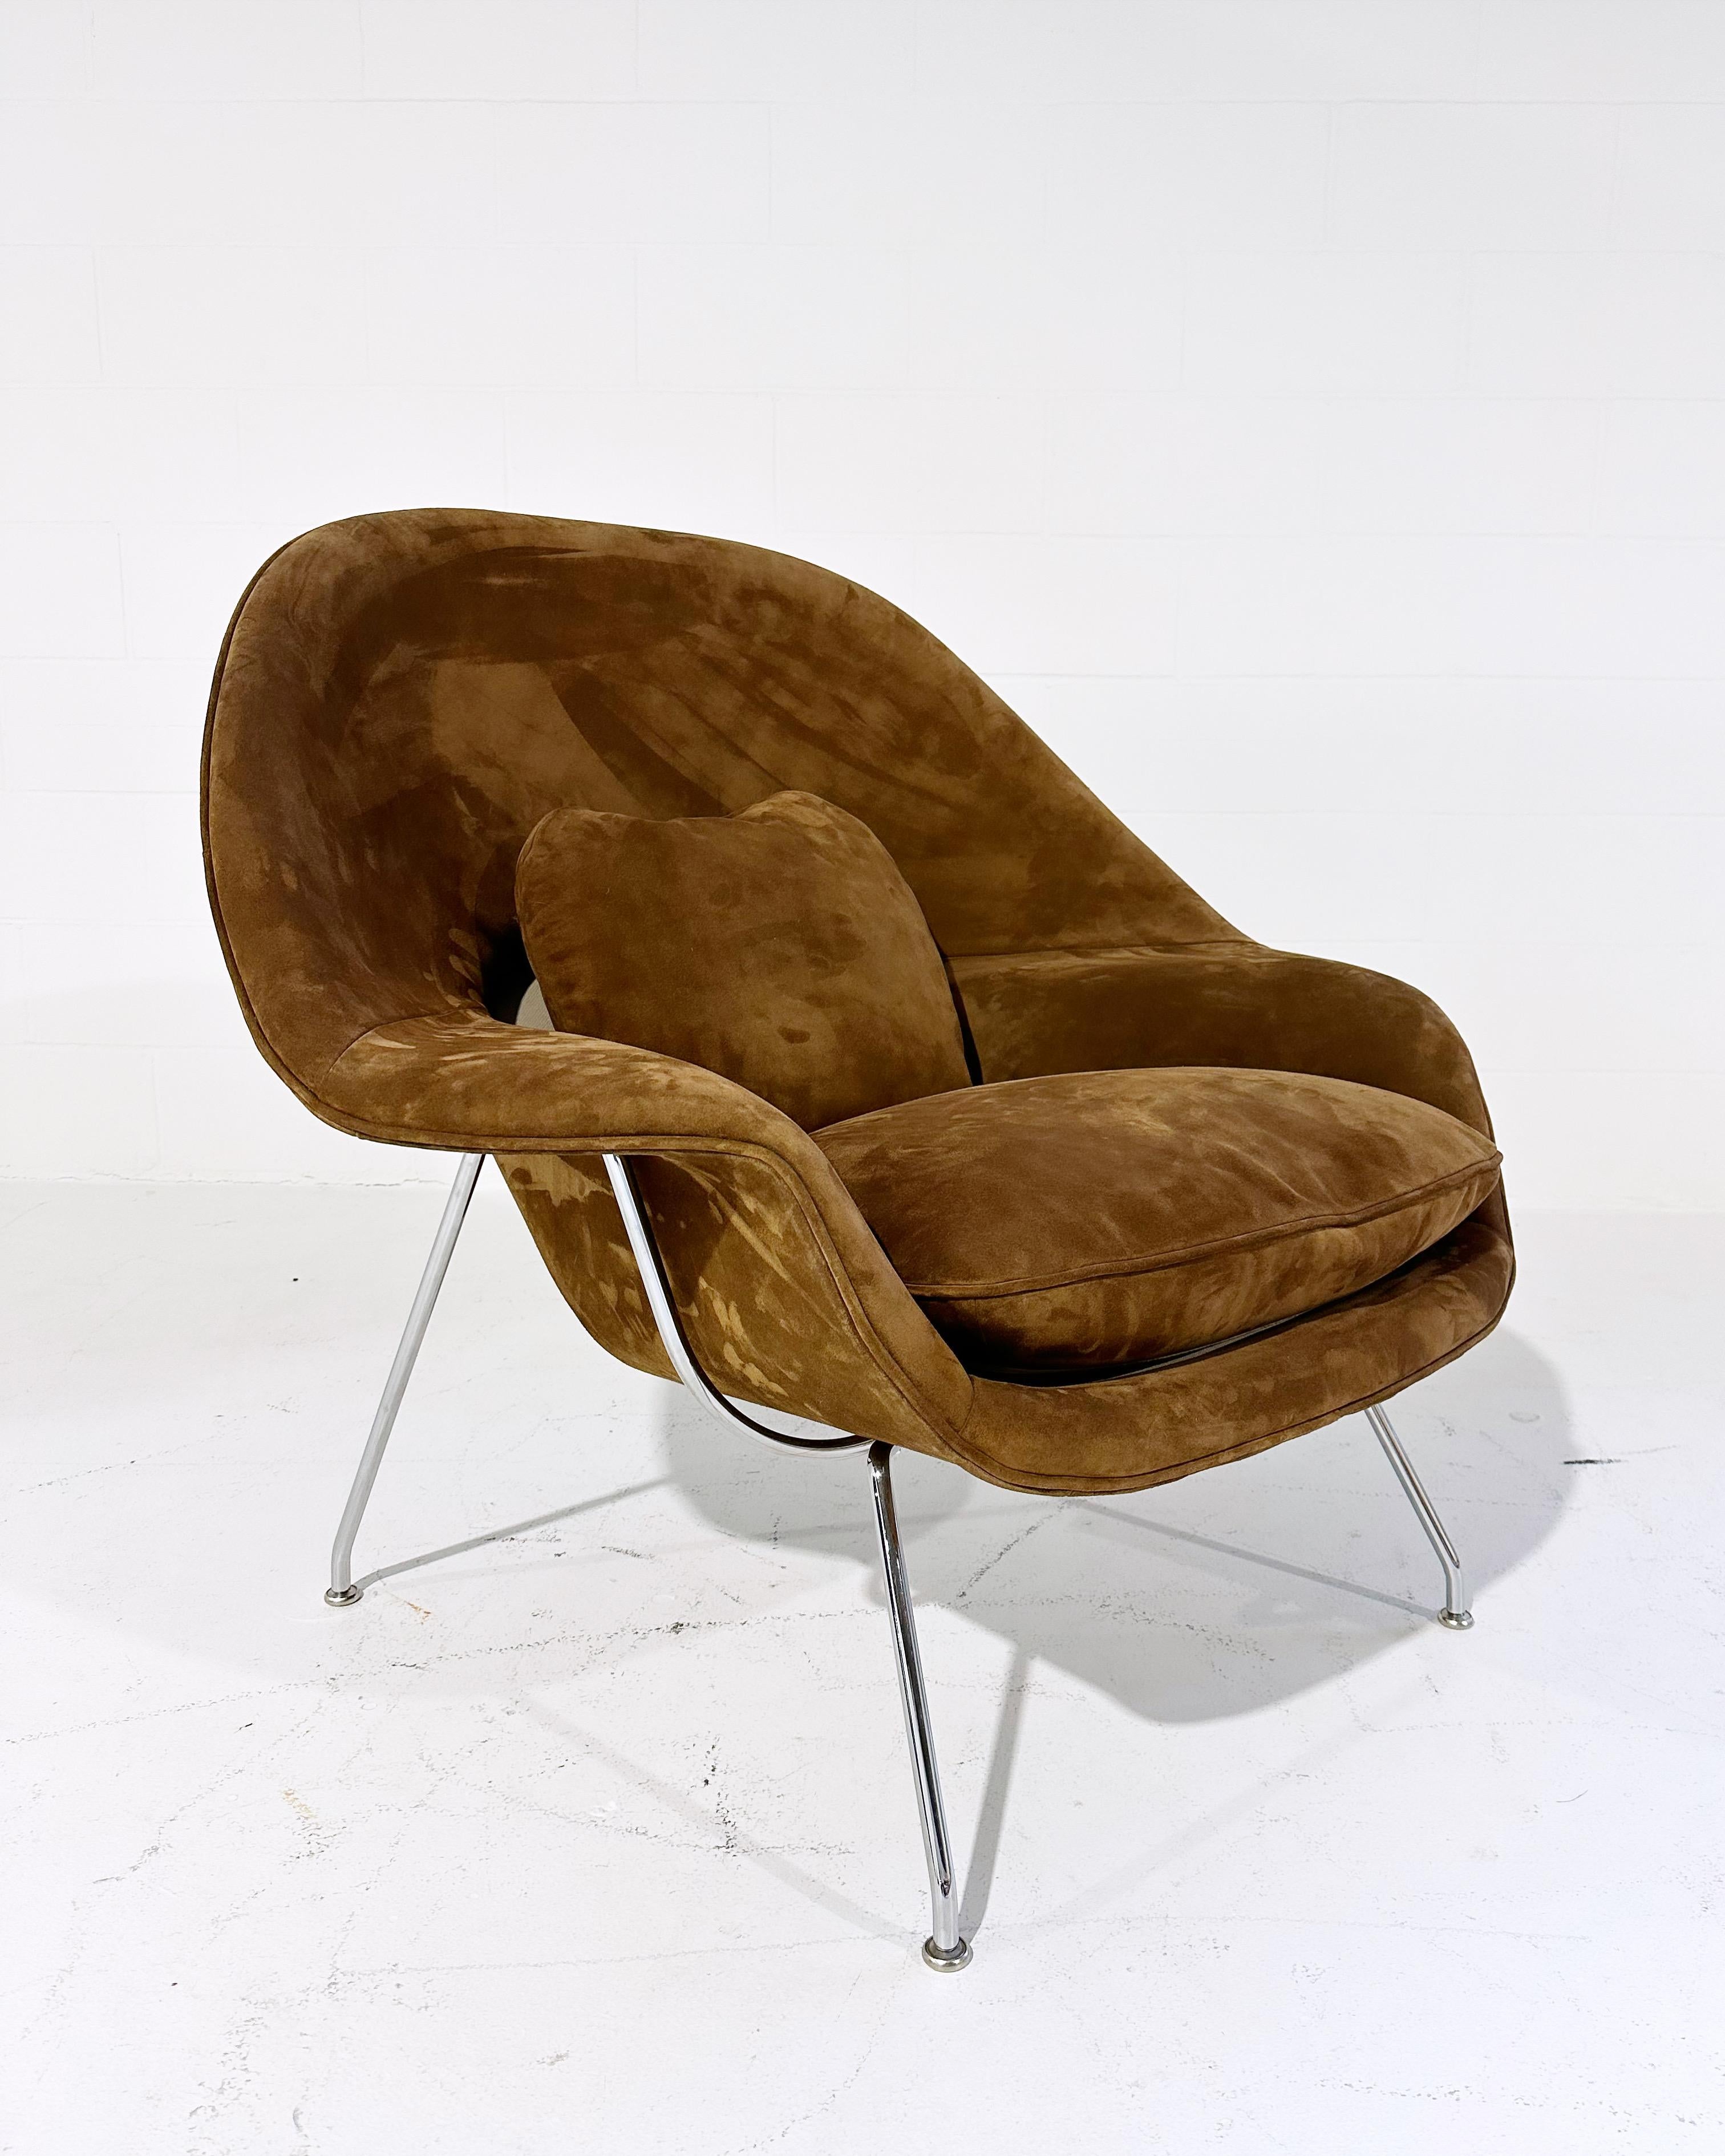 Un des favoris de l'équipe de conception de FORSYTH ! 

Eero Saarinen a conçu la révolutionnaire Womb Chair à la demande de Florence Knoll qui souhaitait 